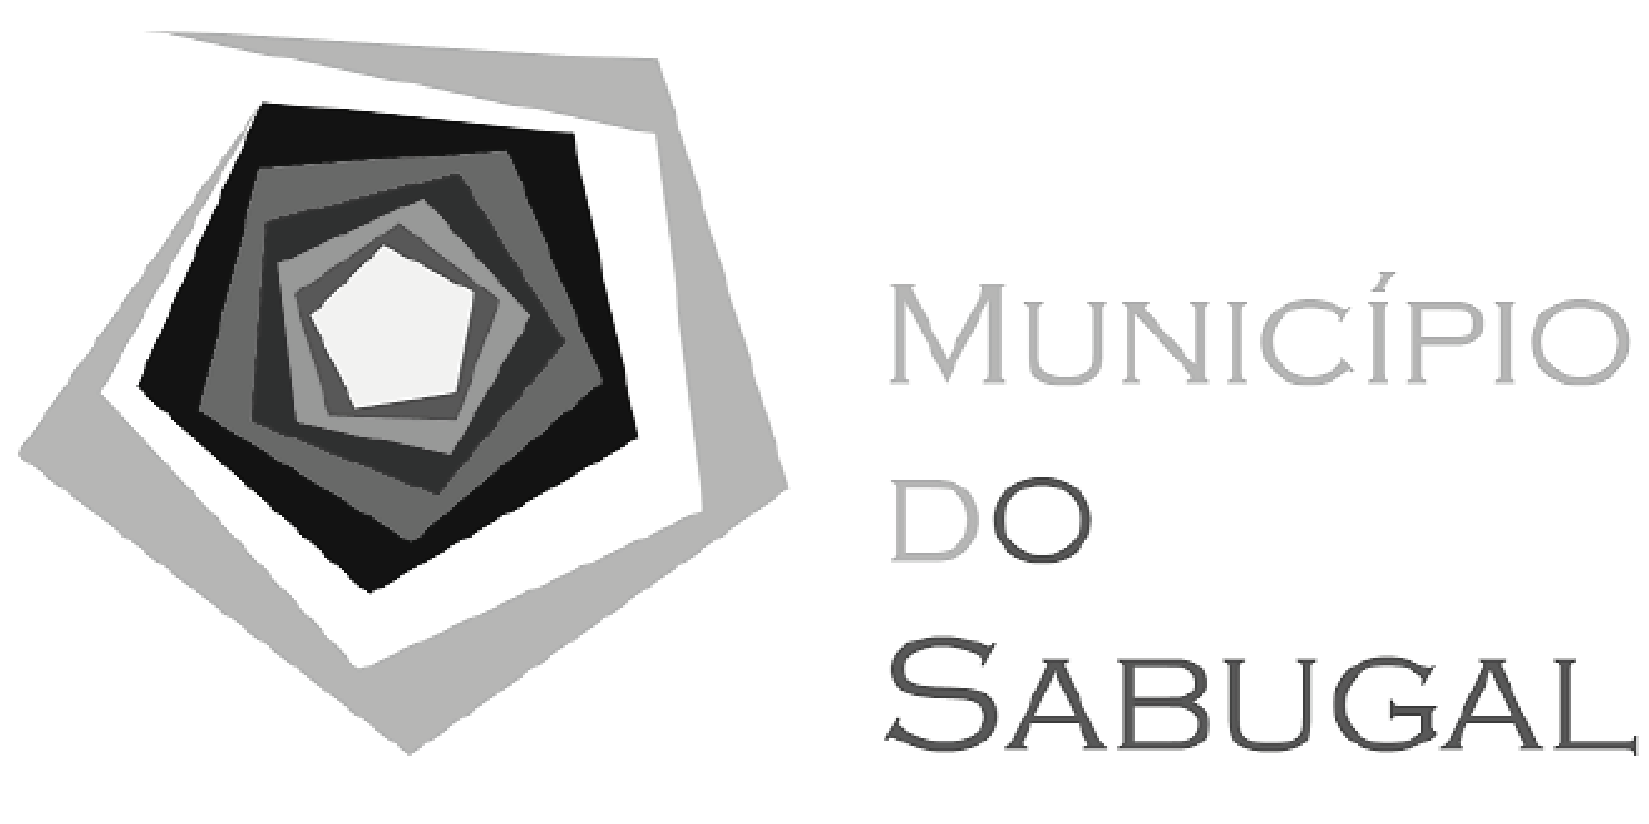 Camara Municipal do Sabugal